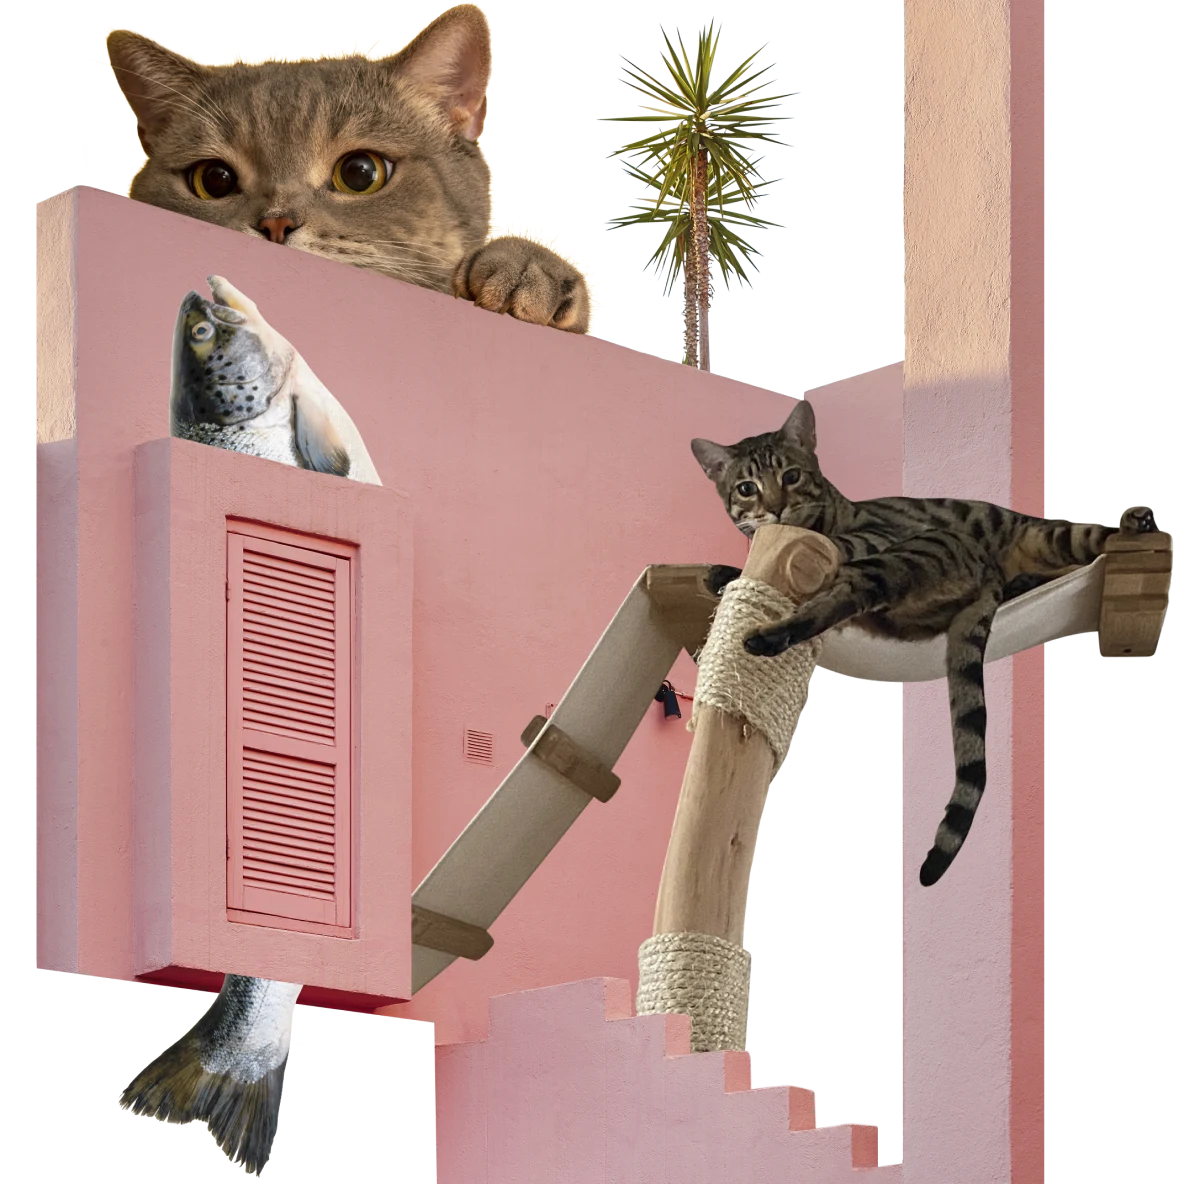 Façade rose vif avec la tête et la queue d'un poisson dépassant d'une fenêtre au volet fermé. À droite, chat tigré se reposant sur un petit hamac. Chat roux qui regarde du haut du mur.